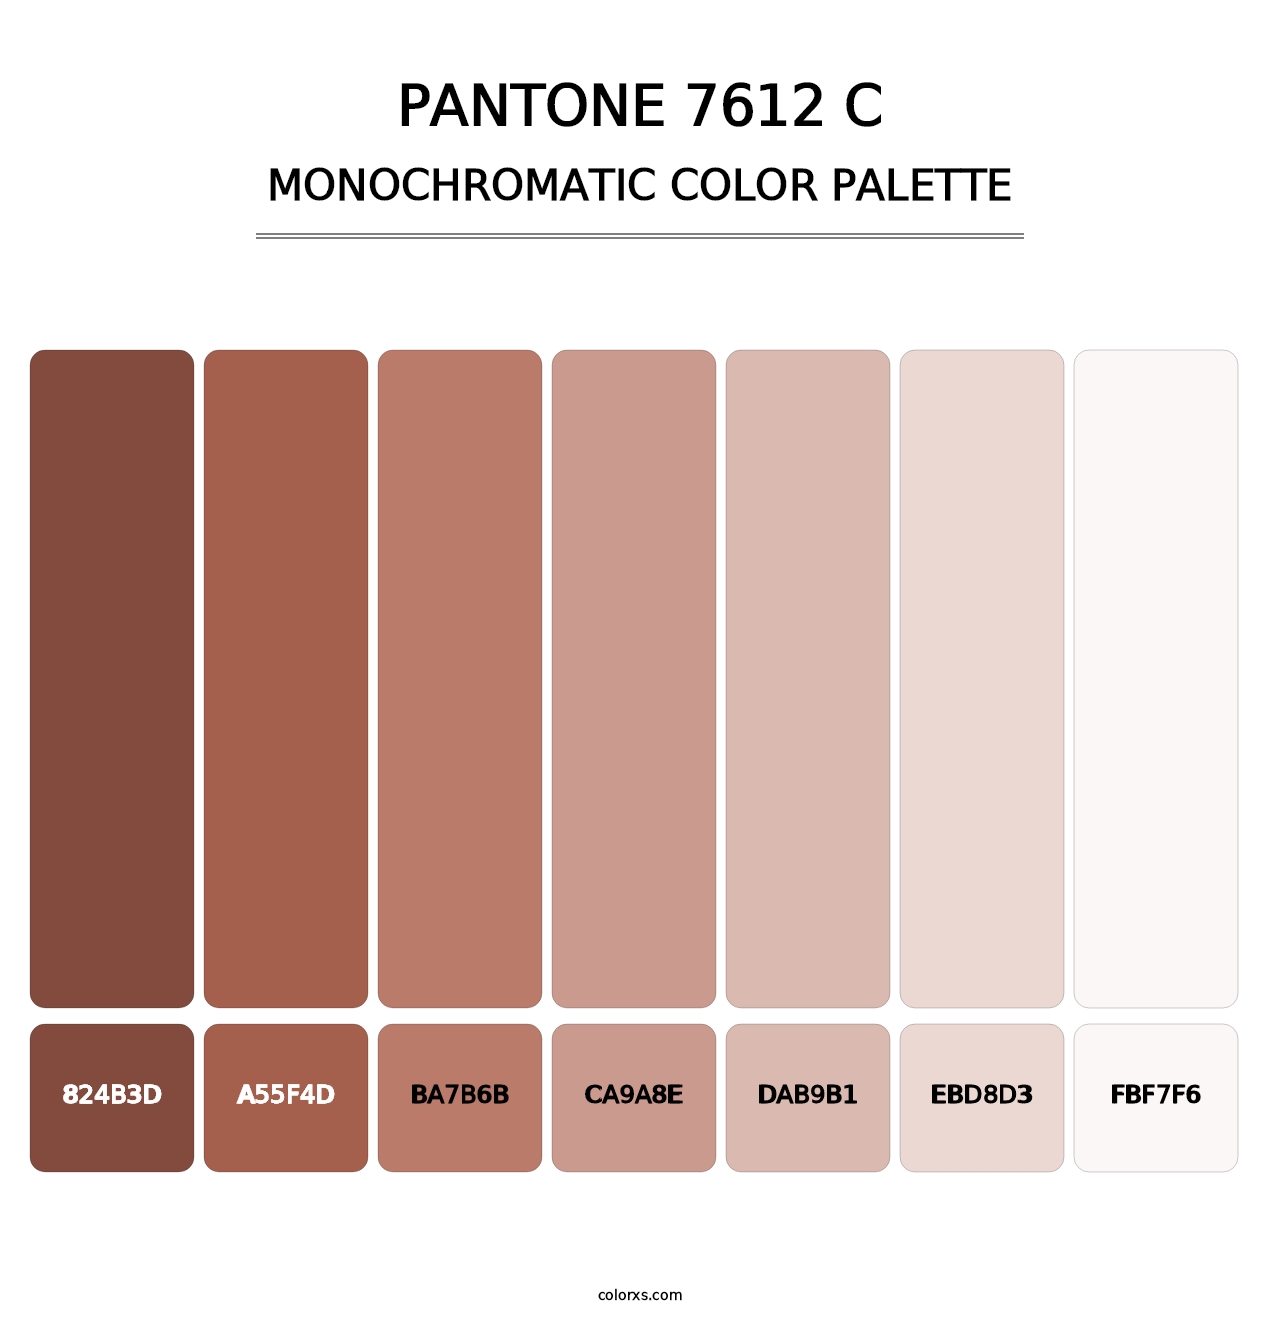 PANTONE 7612 C - Monochromatic Color Palette